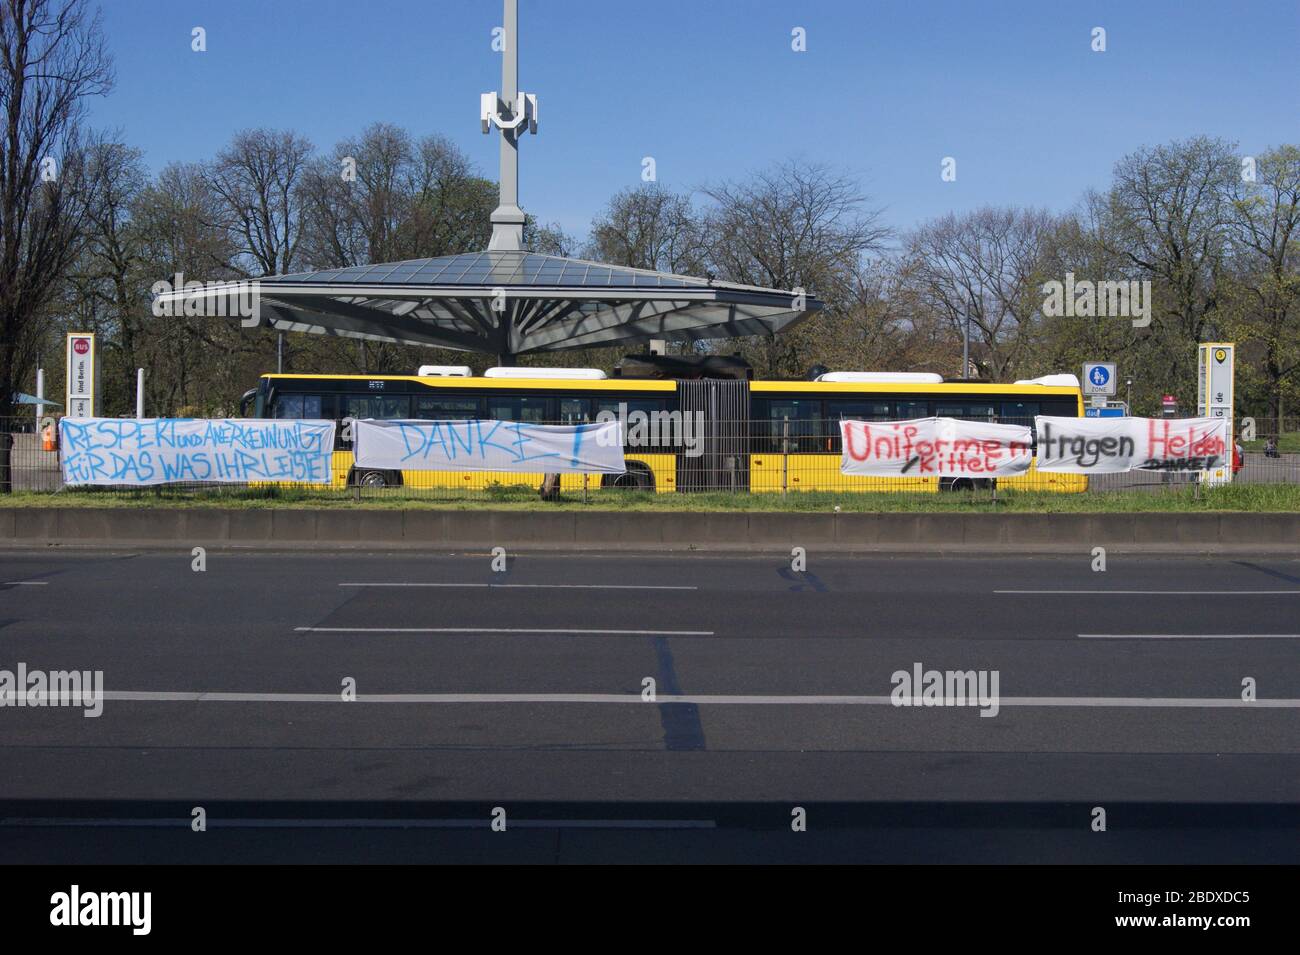 Corona in Berlin-Spandau: Spandauer Bürger haben auf dem Mittelstreifen am Altstädter Ring in Höhe „U-Bahnhof Rathaus Spandau“ Transparente angebracht Stock Photo